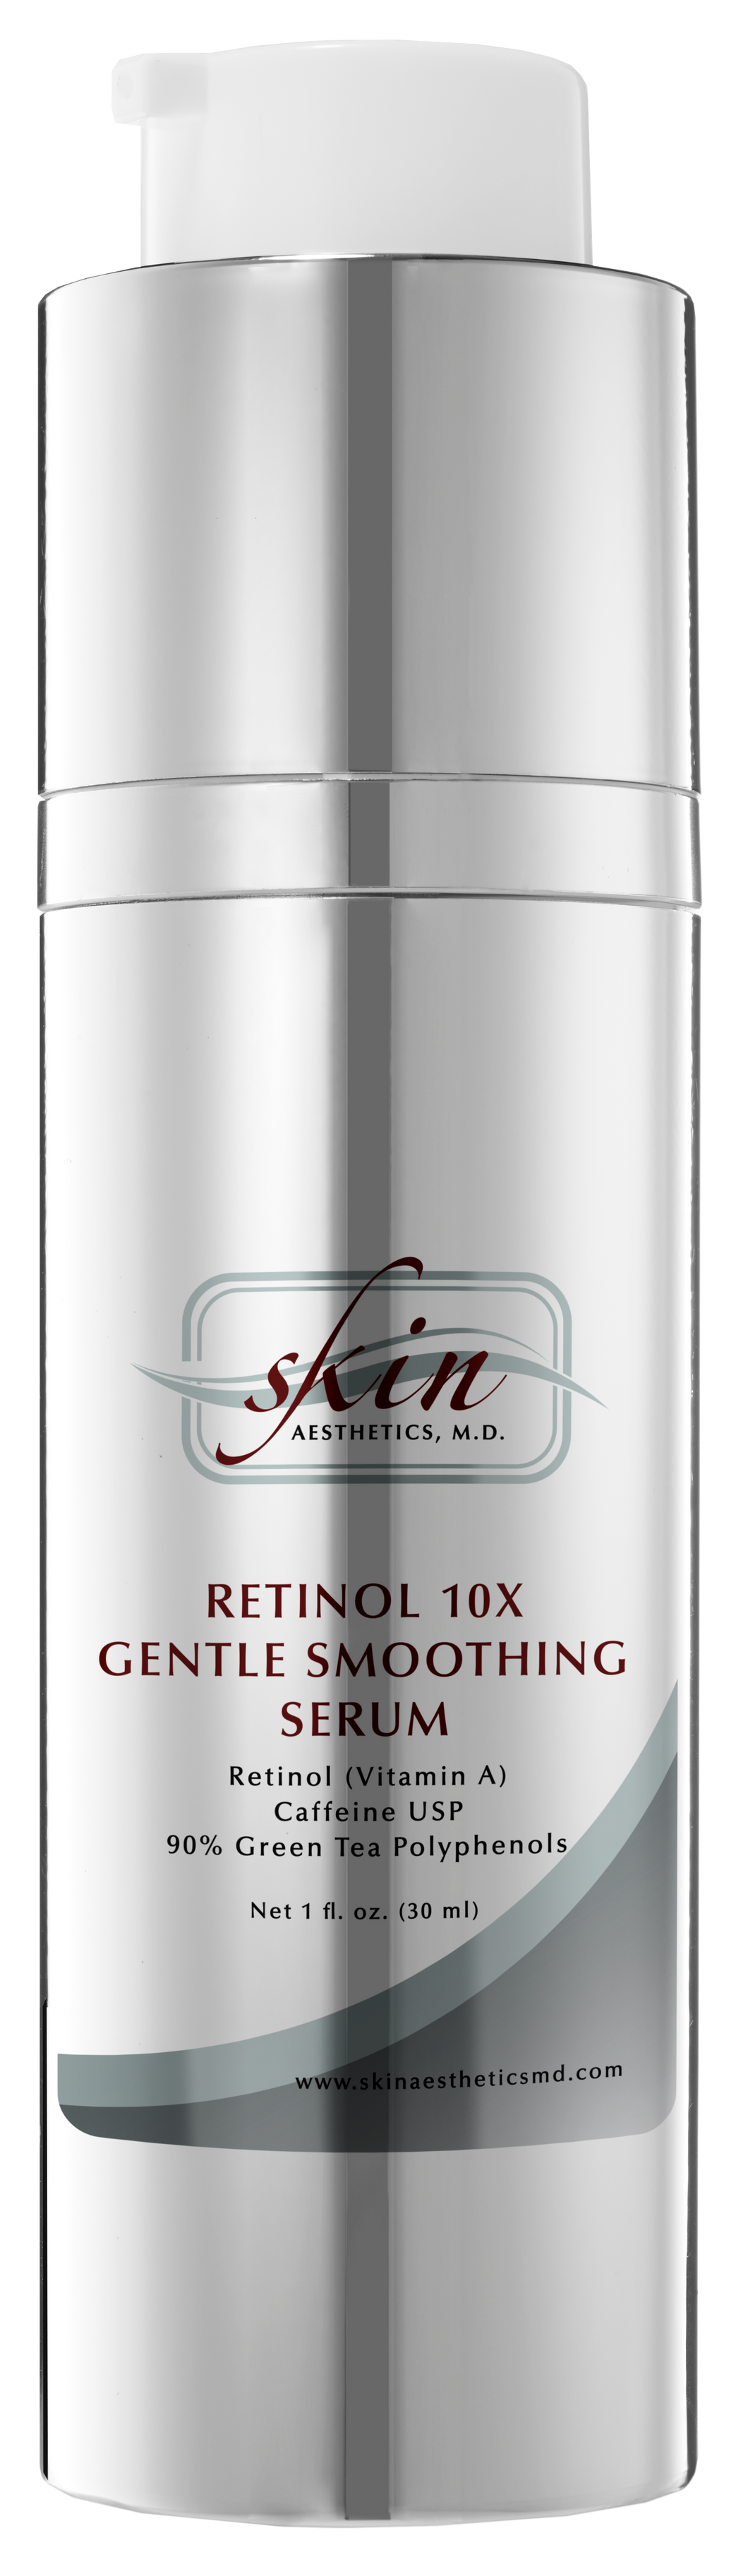 Retinol 10x Gentle Smoothing Serum